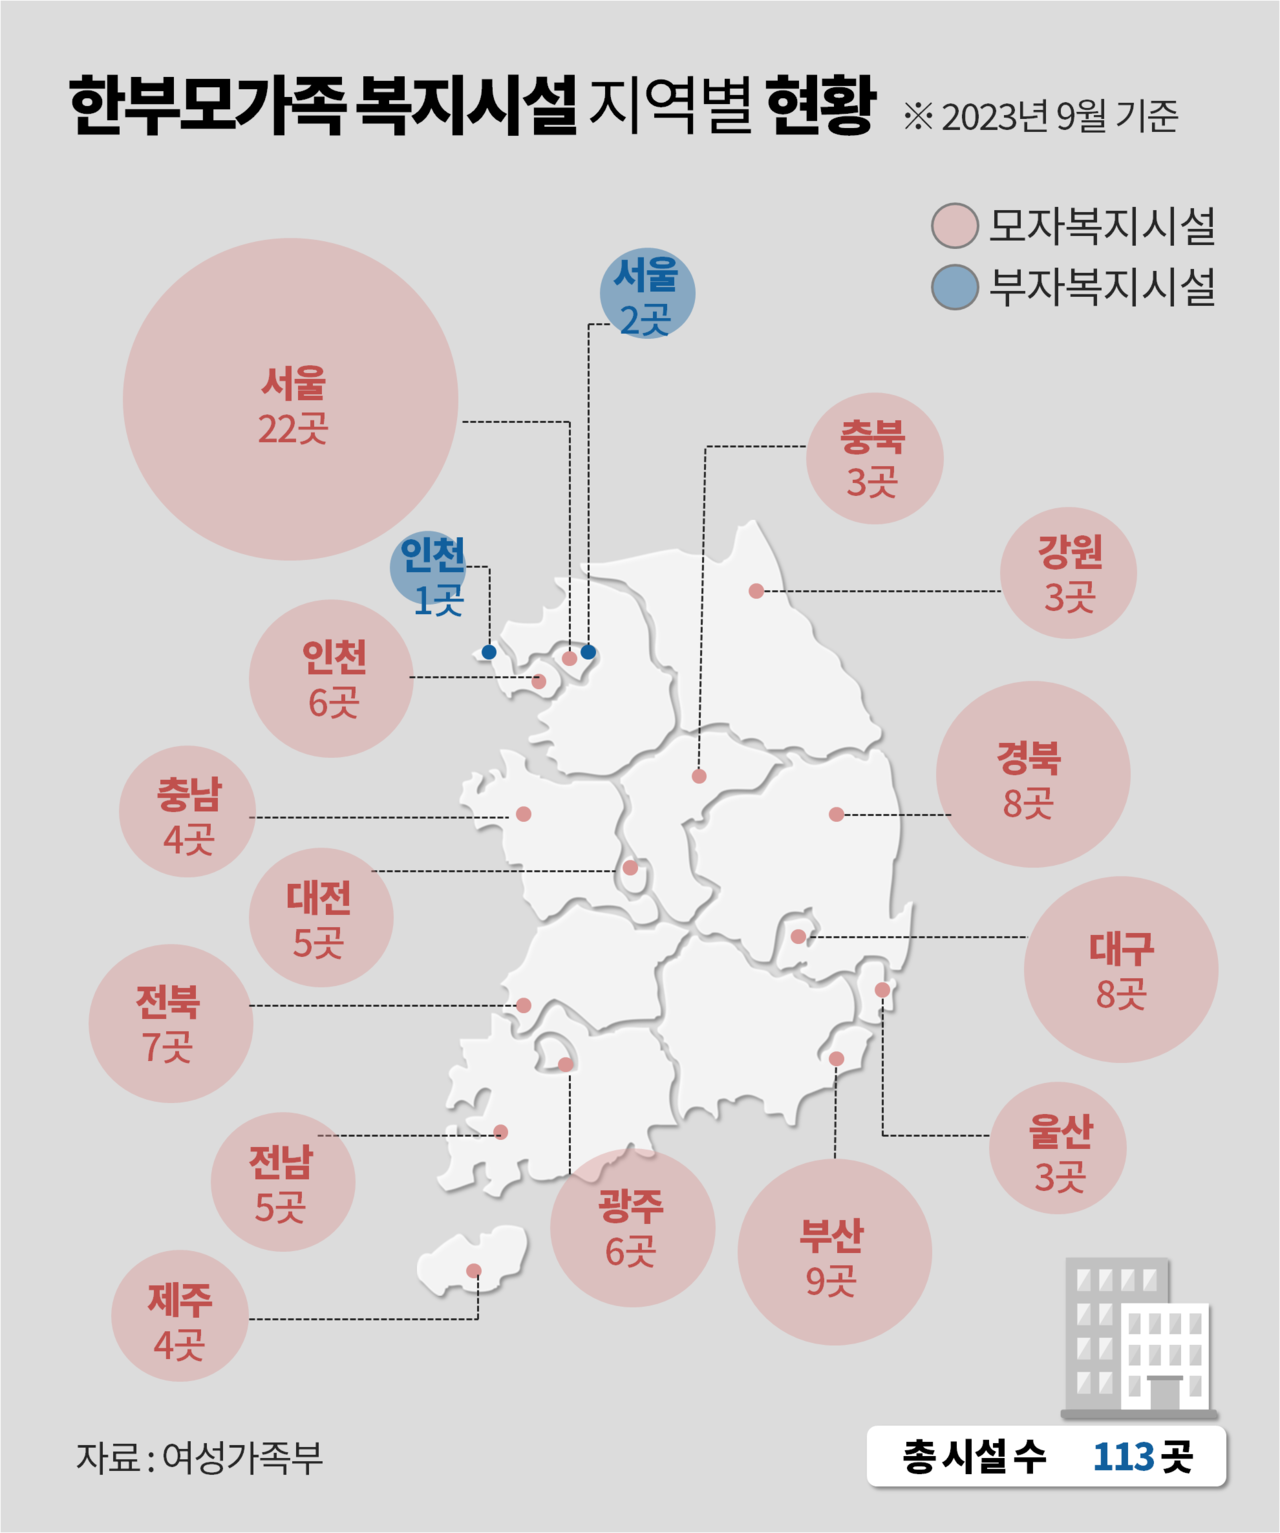 2023년 한부모가족 복지시설 지역별 현황. 그래픽 김다연